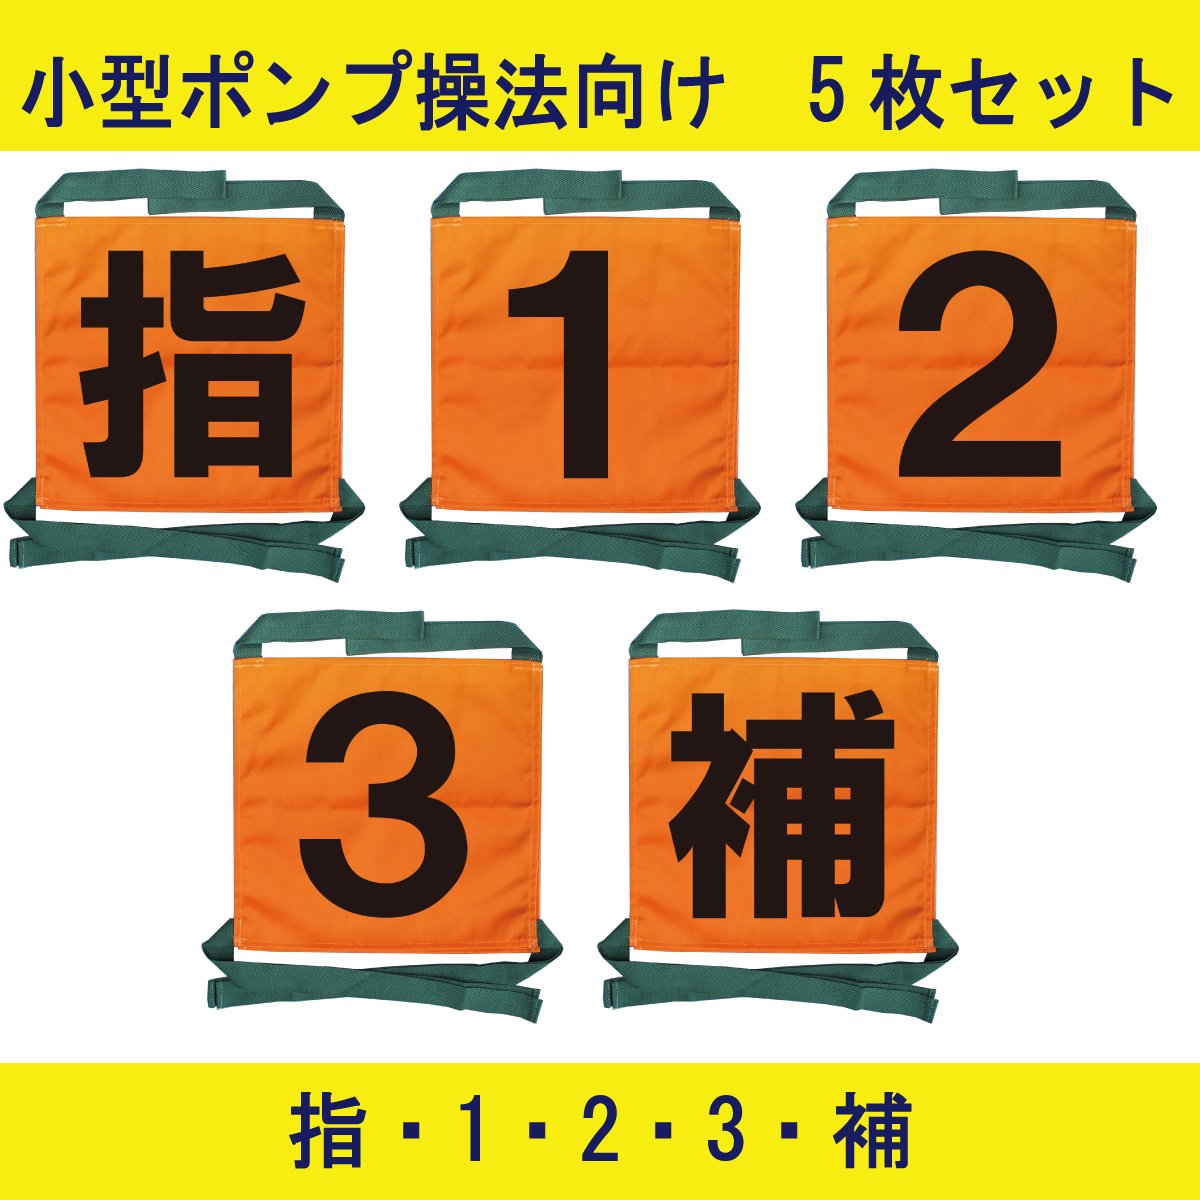 【2022年新デザイン】操法用ゼッケン 5枚セット【指・1・2・3・補】オレンジ 【画像2】